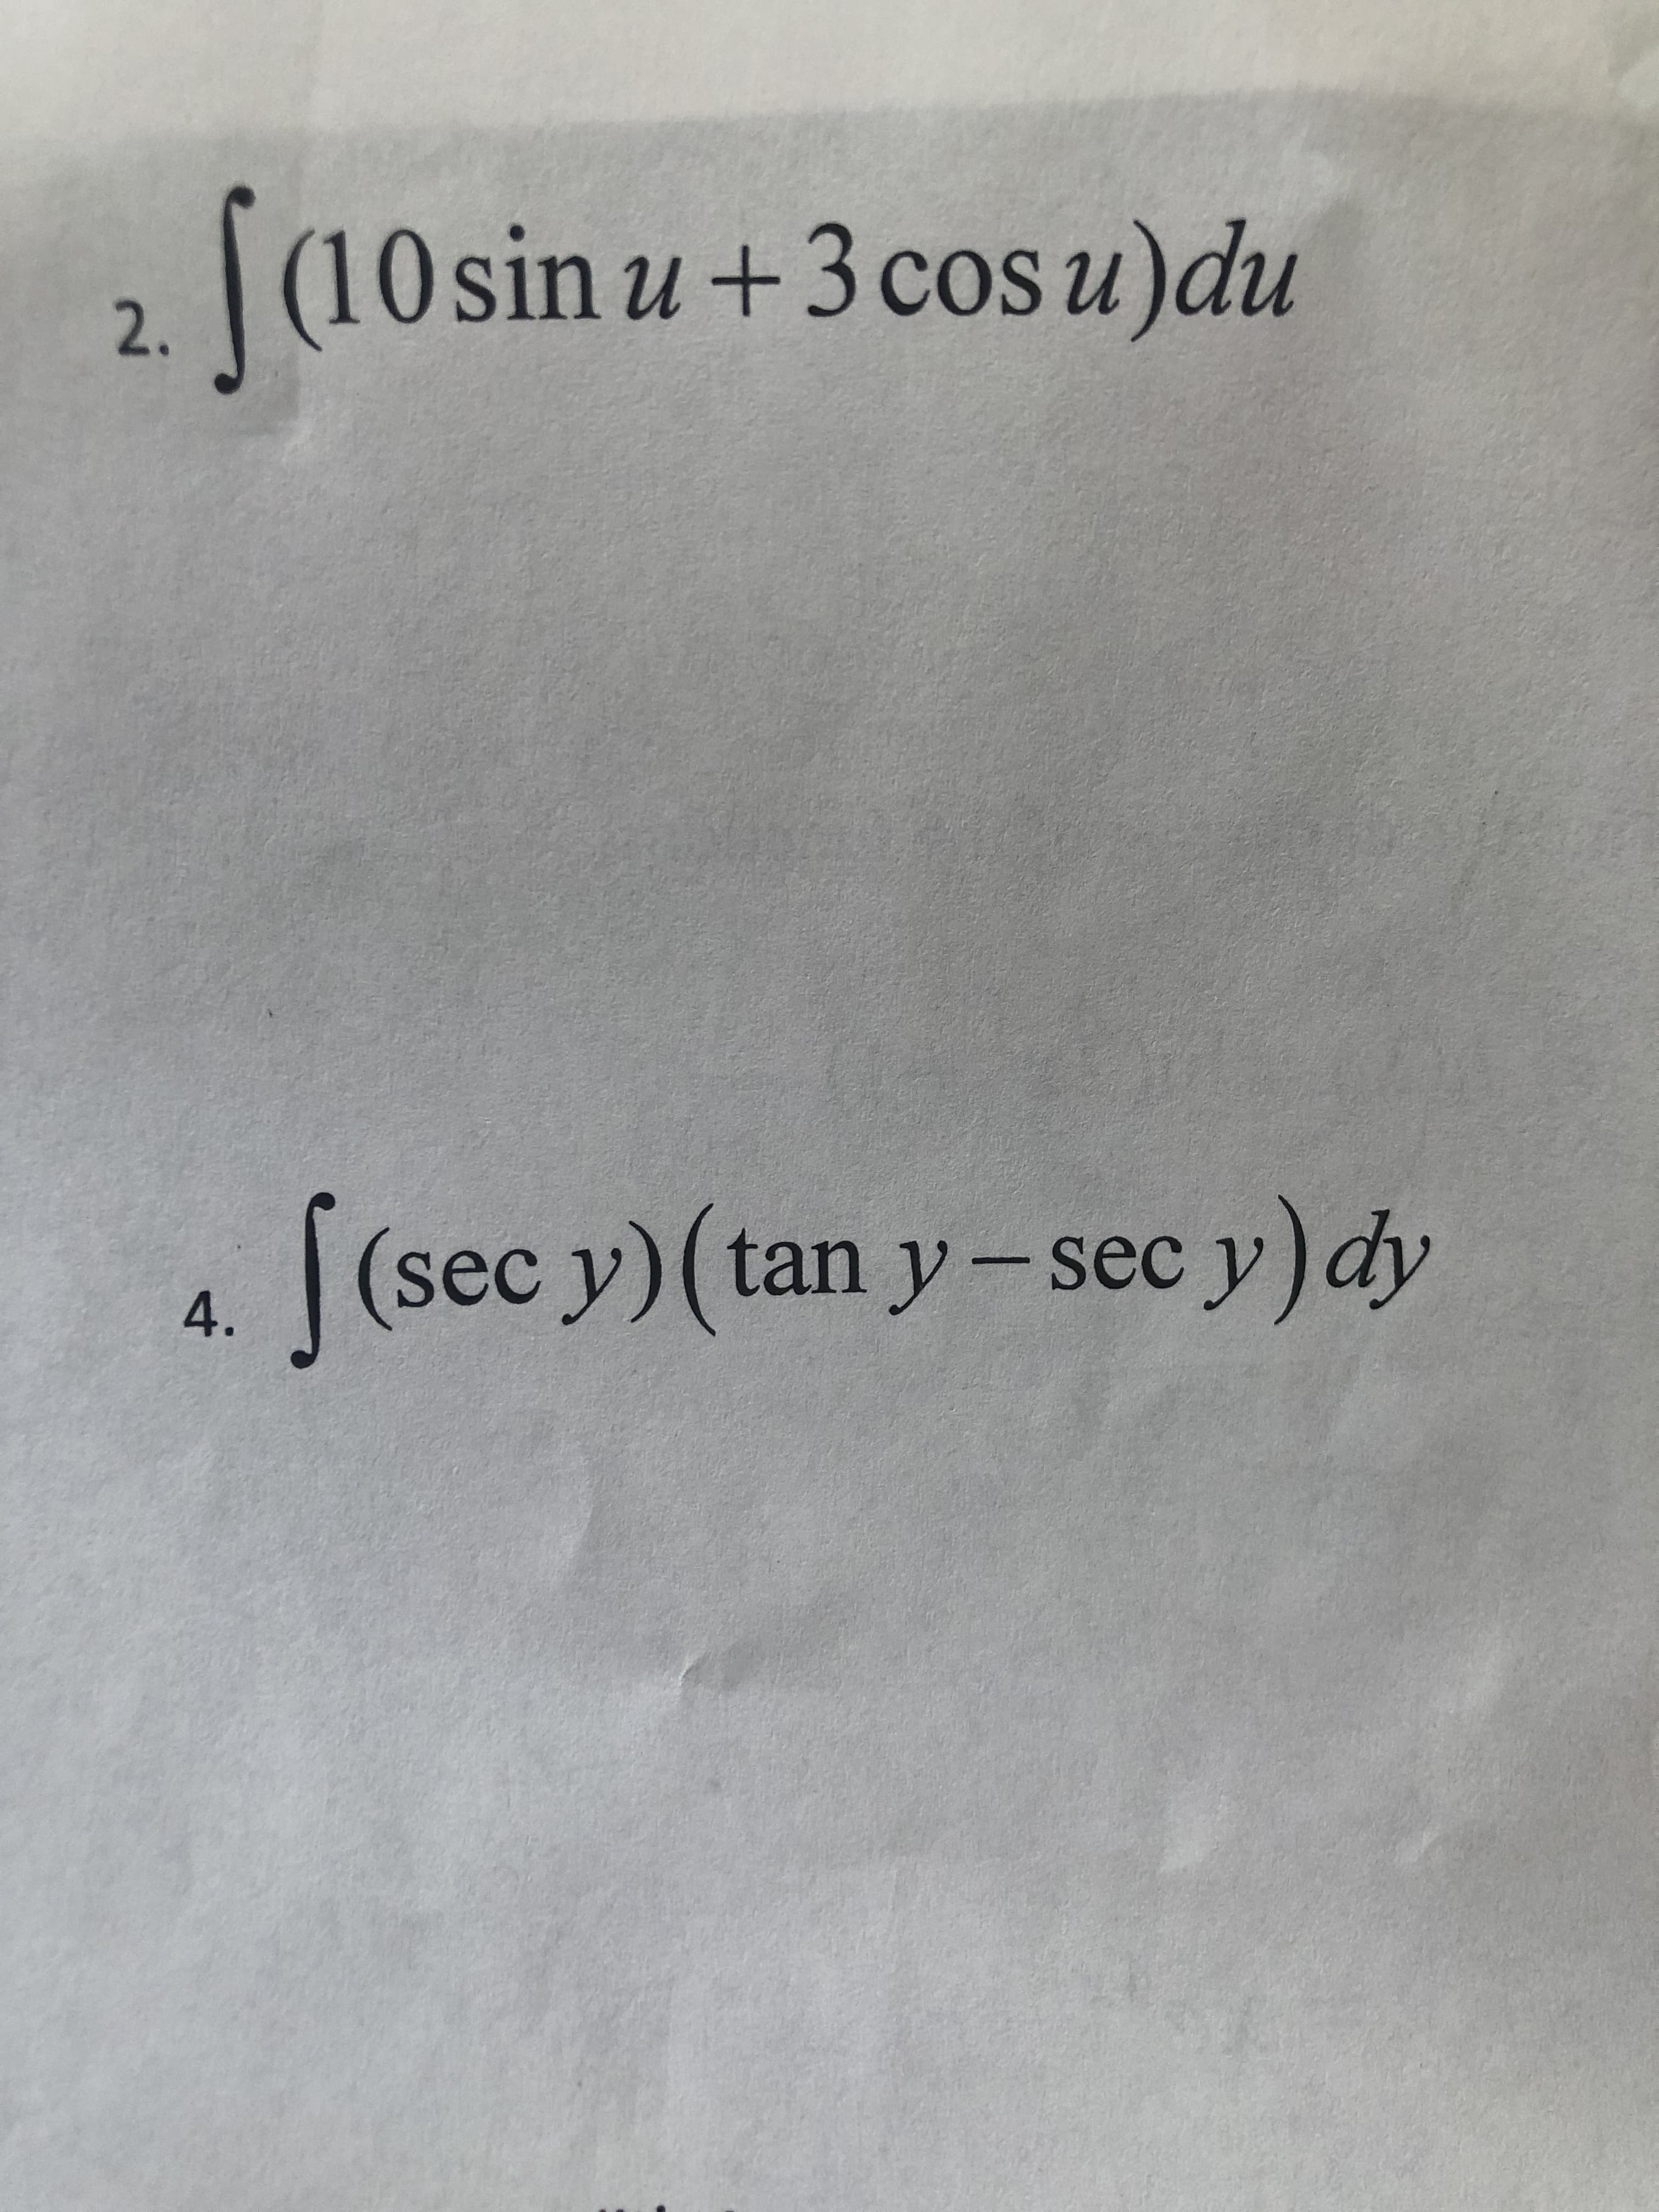 |(10 sin u+3 cos u)du
u+3cos
2.
|(sec y) (tan y-sec y)dy
4.
